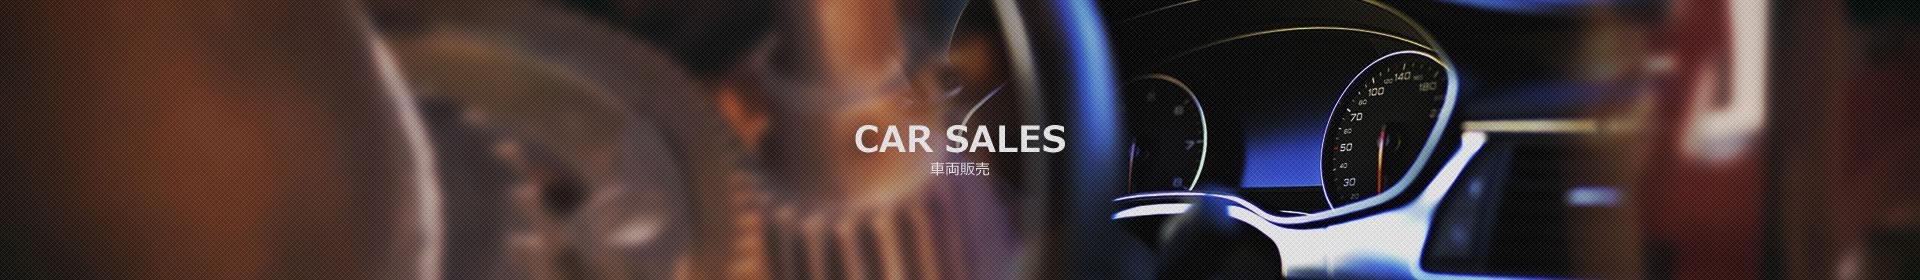 CAR SALES